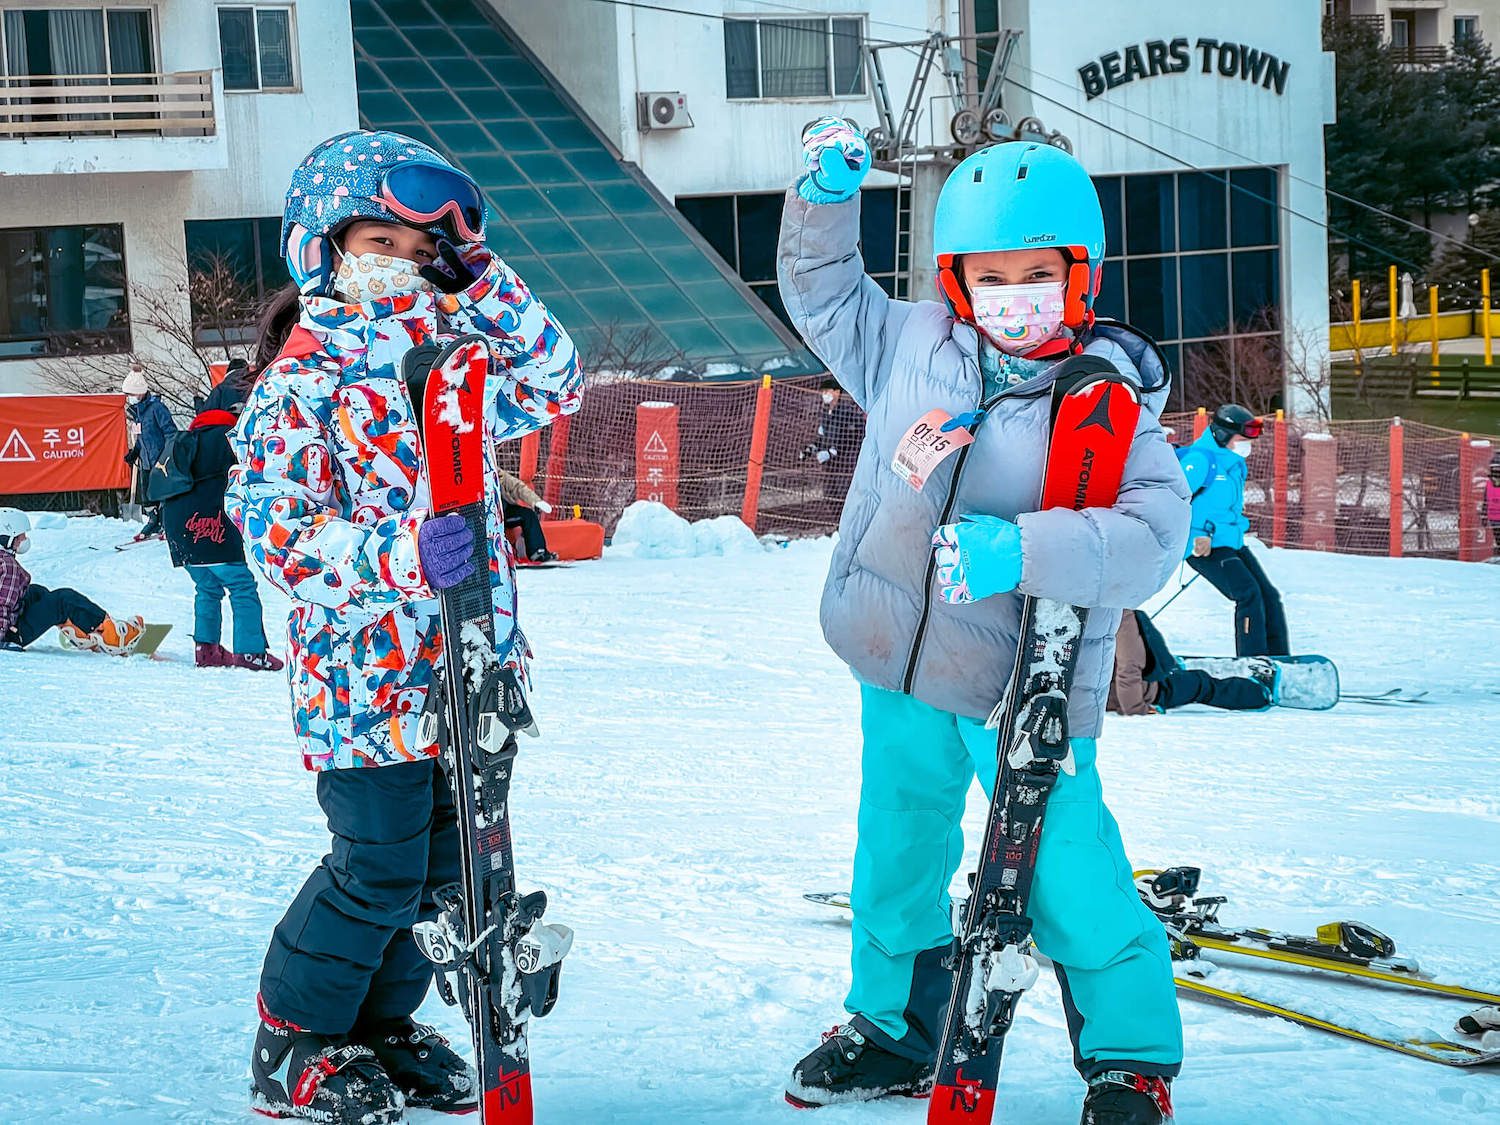 ski resorts in korea | bears town ski resort